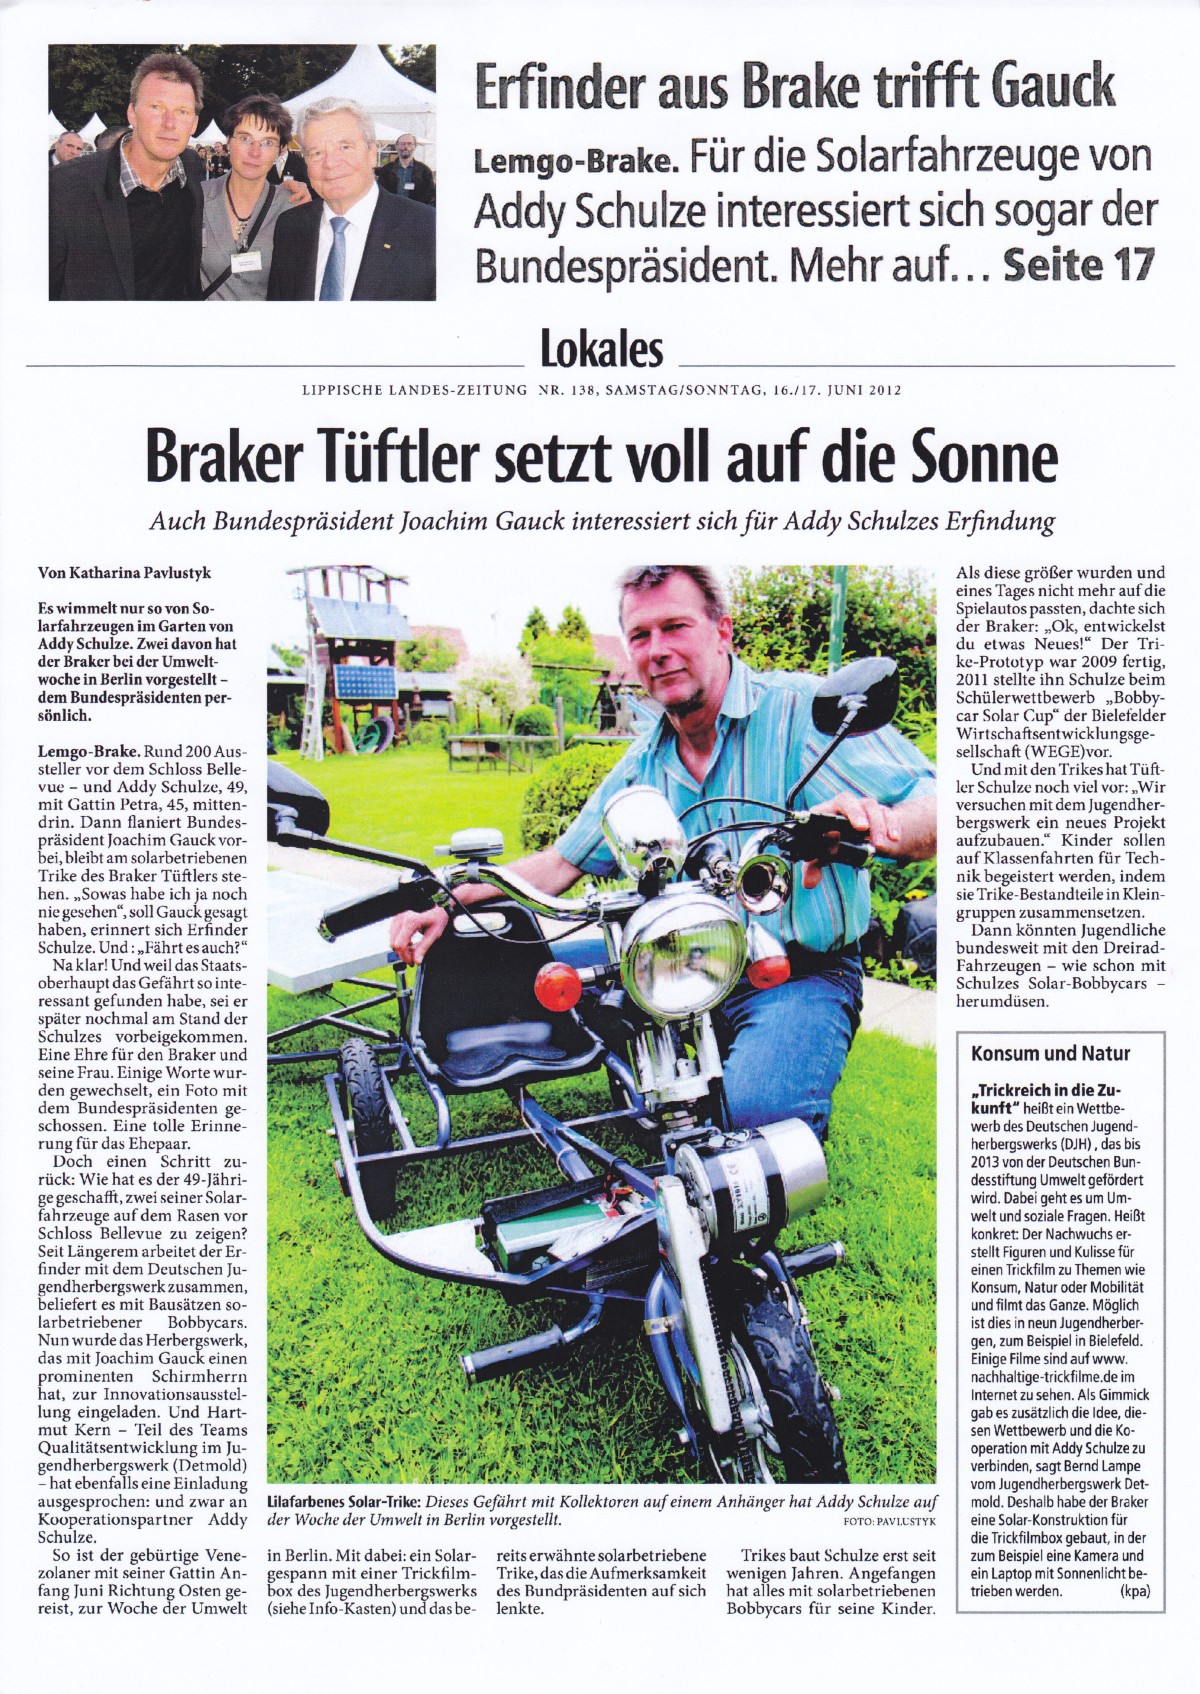 Lipp. Landeszeitung vom 16/17.06.2012